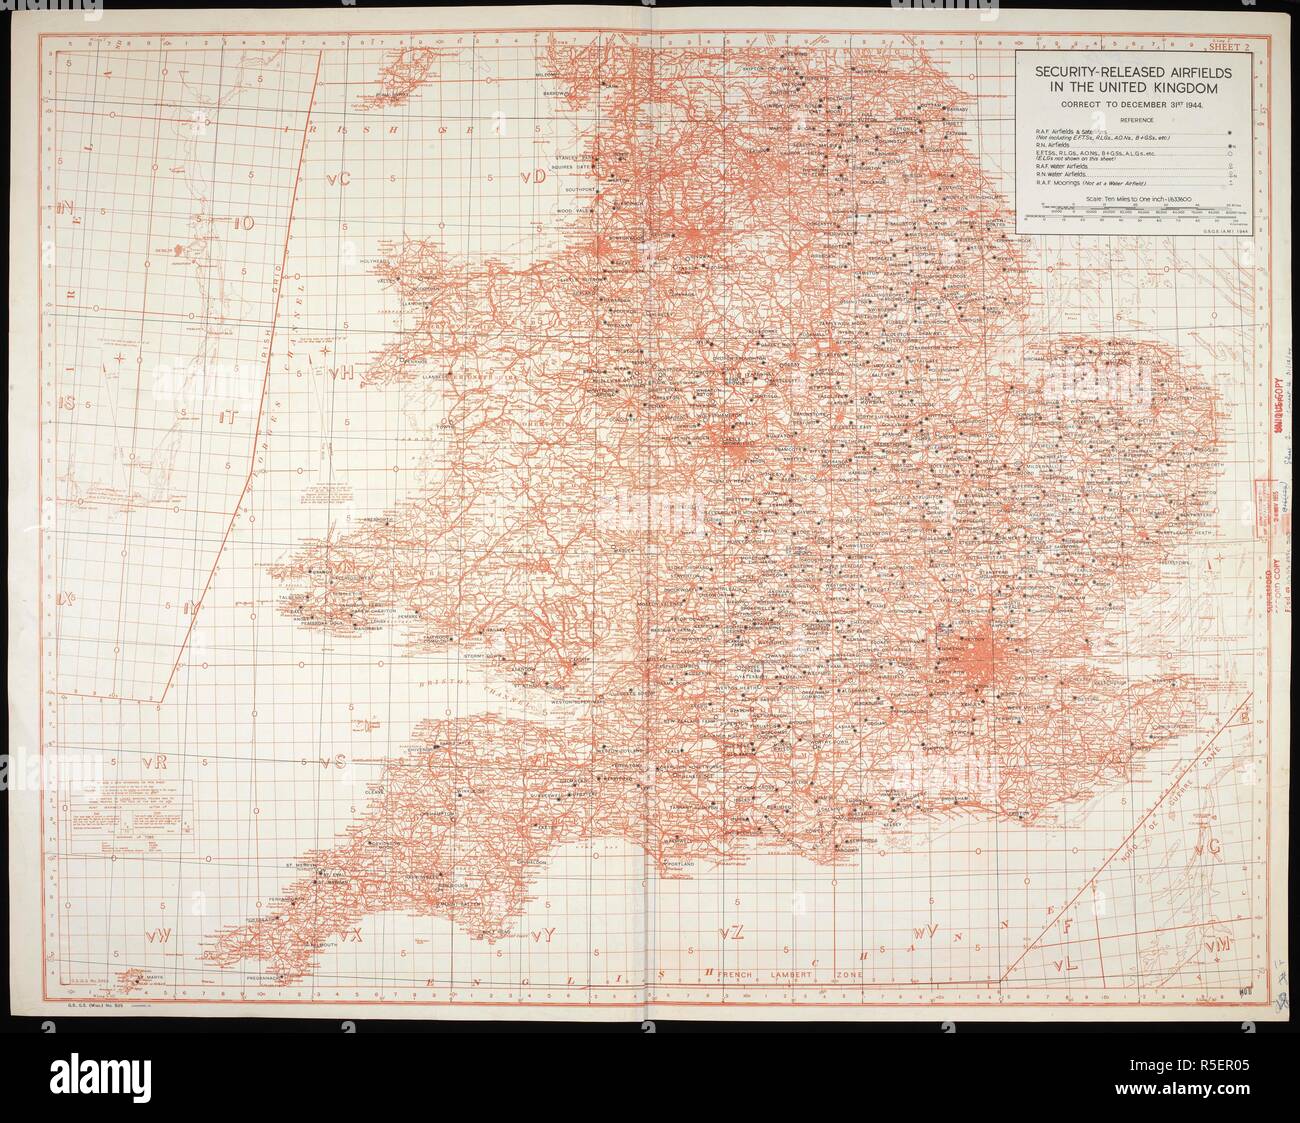 Mappa/grafico della sicurezza rilasciato gli aerodromi nel Regno Unito, al 31 dicembre 1944. Sicurezza rilasciato gli aerodromi nel Regno Unito, GSGS Misc 505. [S.l.] : [s.n.], 1944-1945. col.; Scala 1:633 600. Fonte: Mappe MOD GSGS Misc 505. La metà inferiore della mappa. Foto Stock